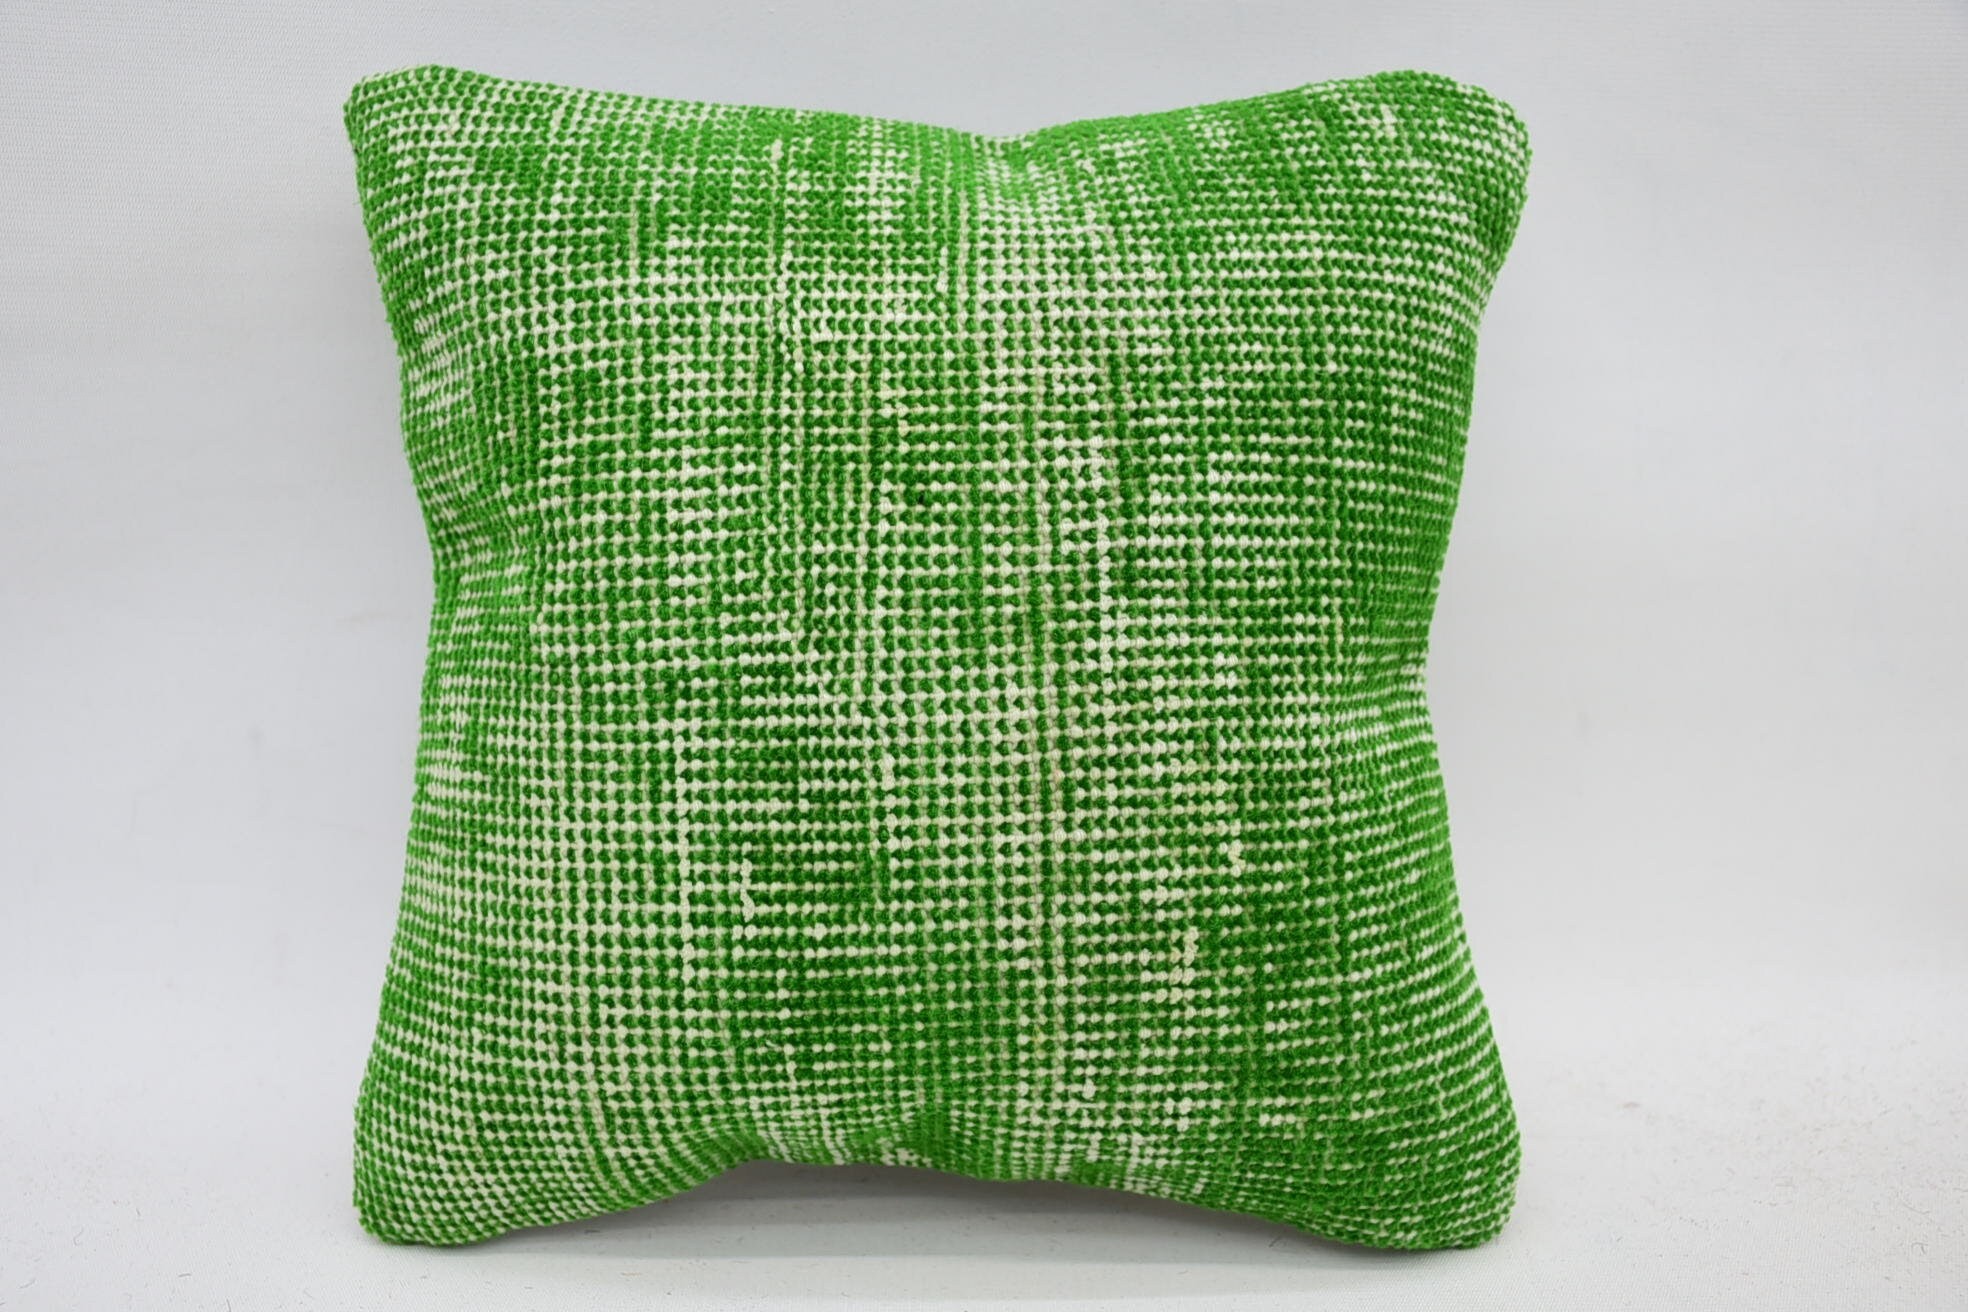 12"x12" Green Cushion, Handmade Kilim Cushion, Interior Designer Pillow, Accent Cushion Case, Antique Pillows